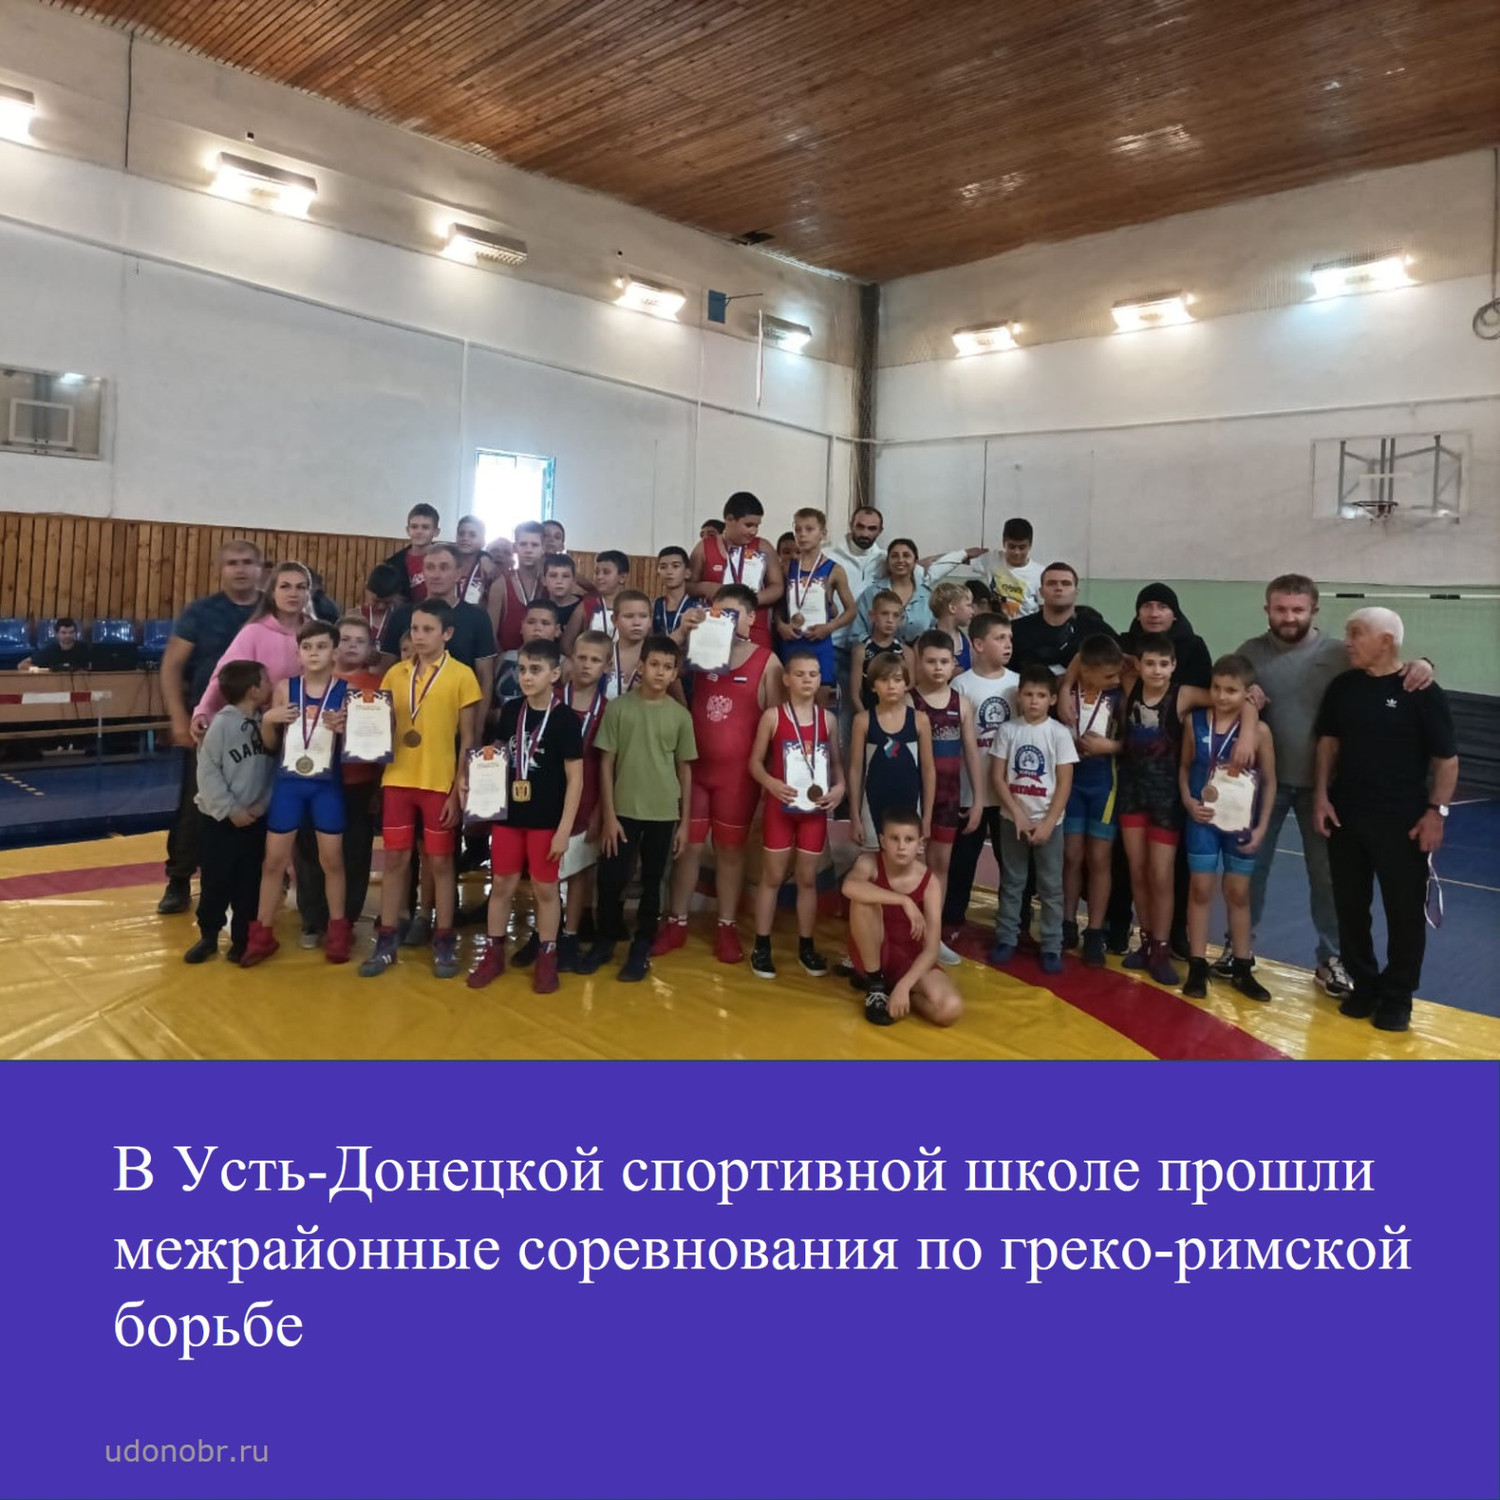 В Усть-Донецкой спортивной школе прошли межрайонные соревнования по греко-римской борьбе